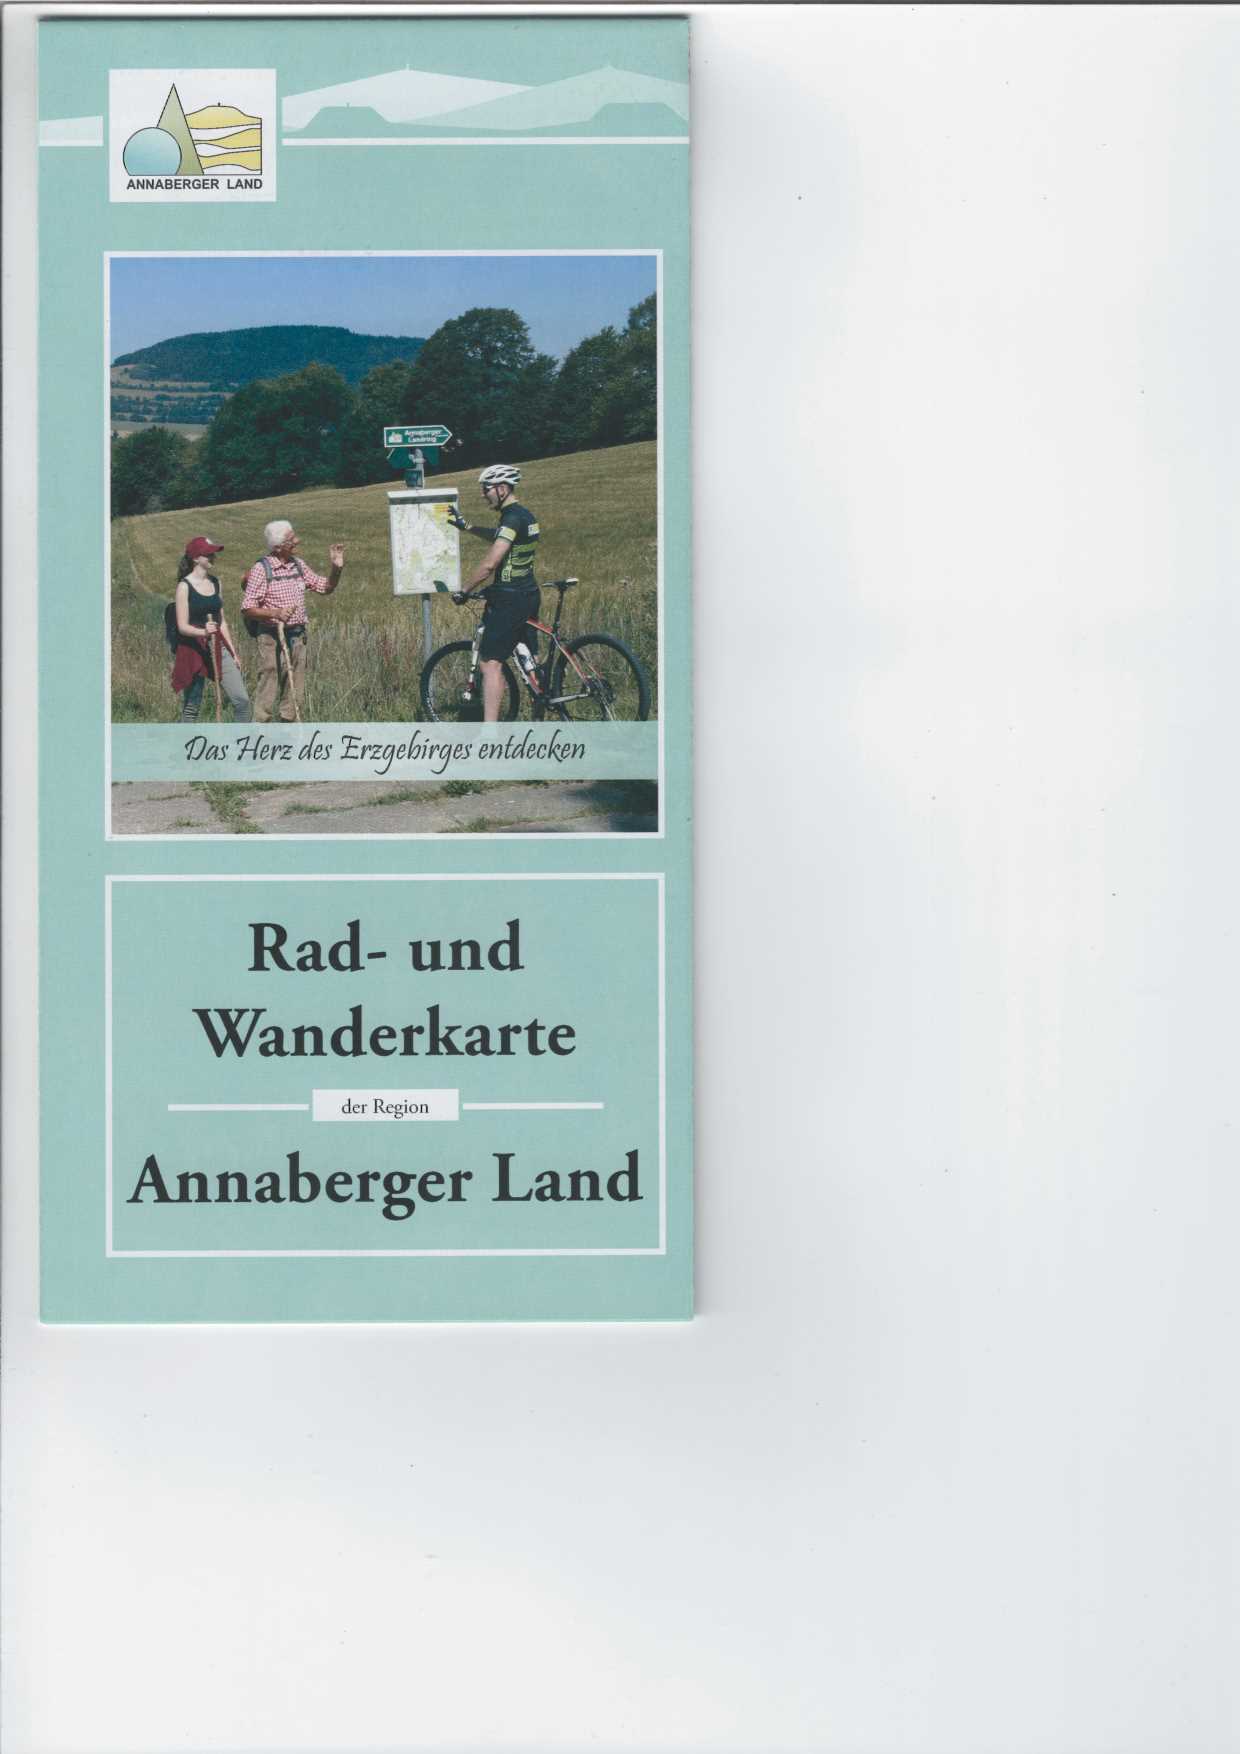   Rad- und Wanderkarte der Region Annaberger Land. 